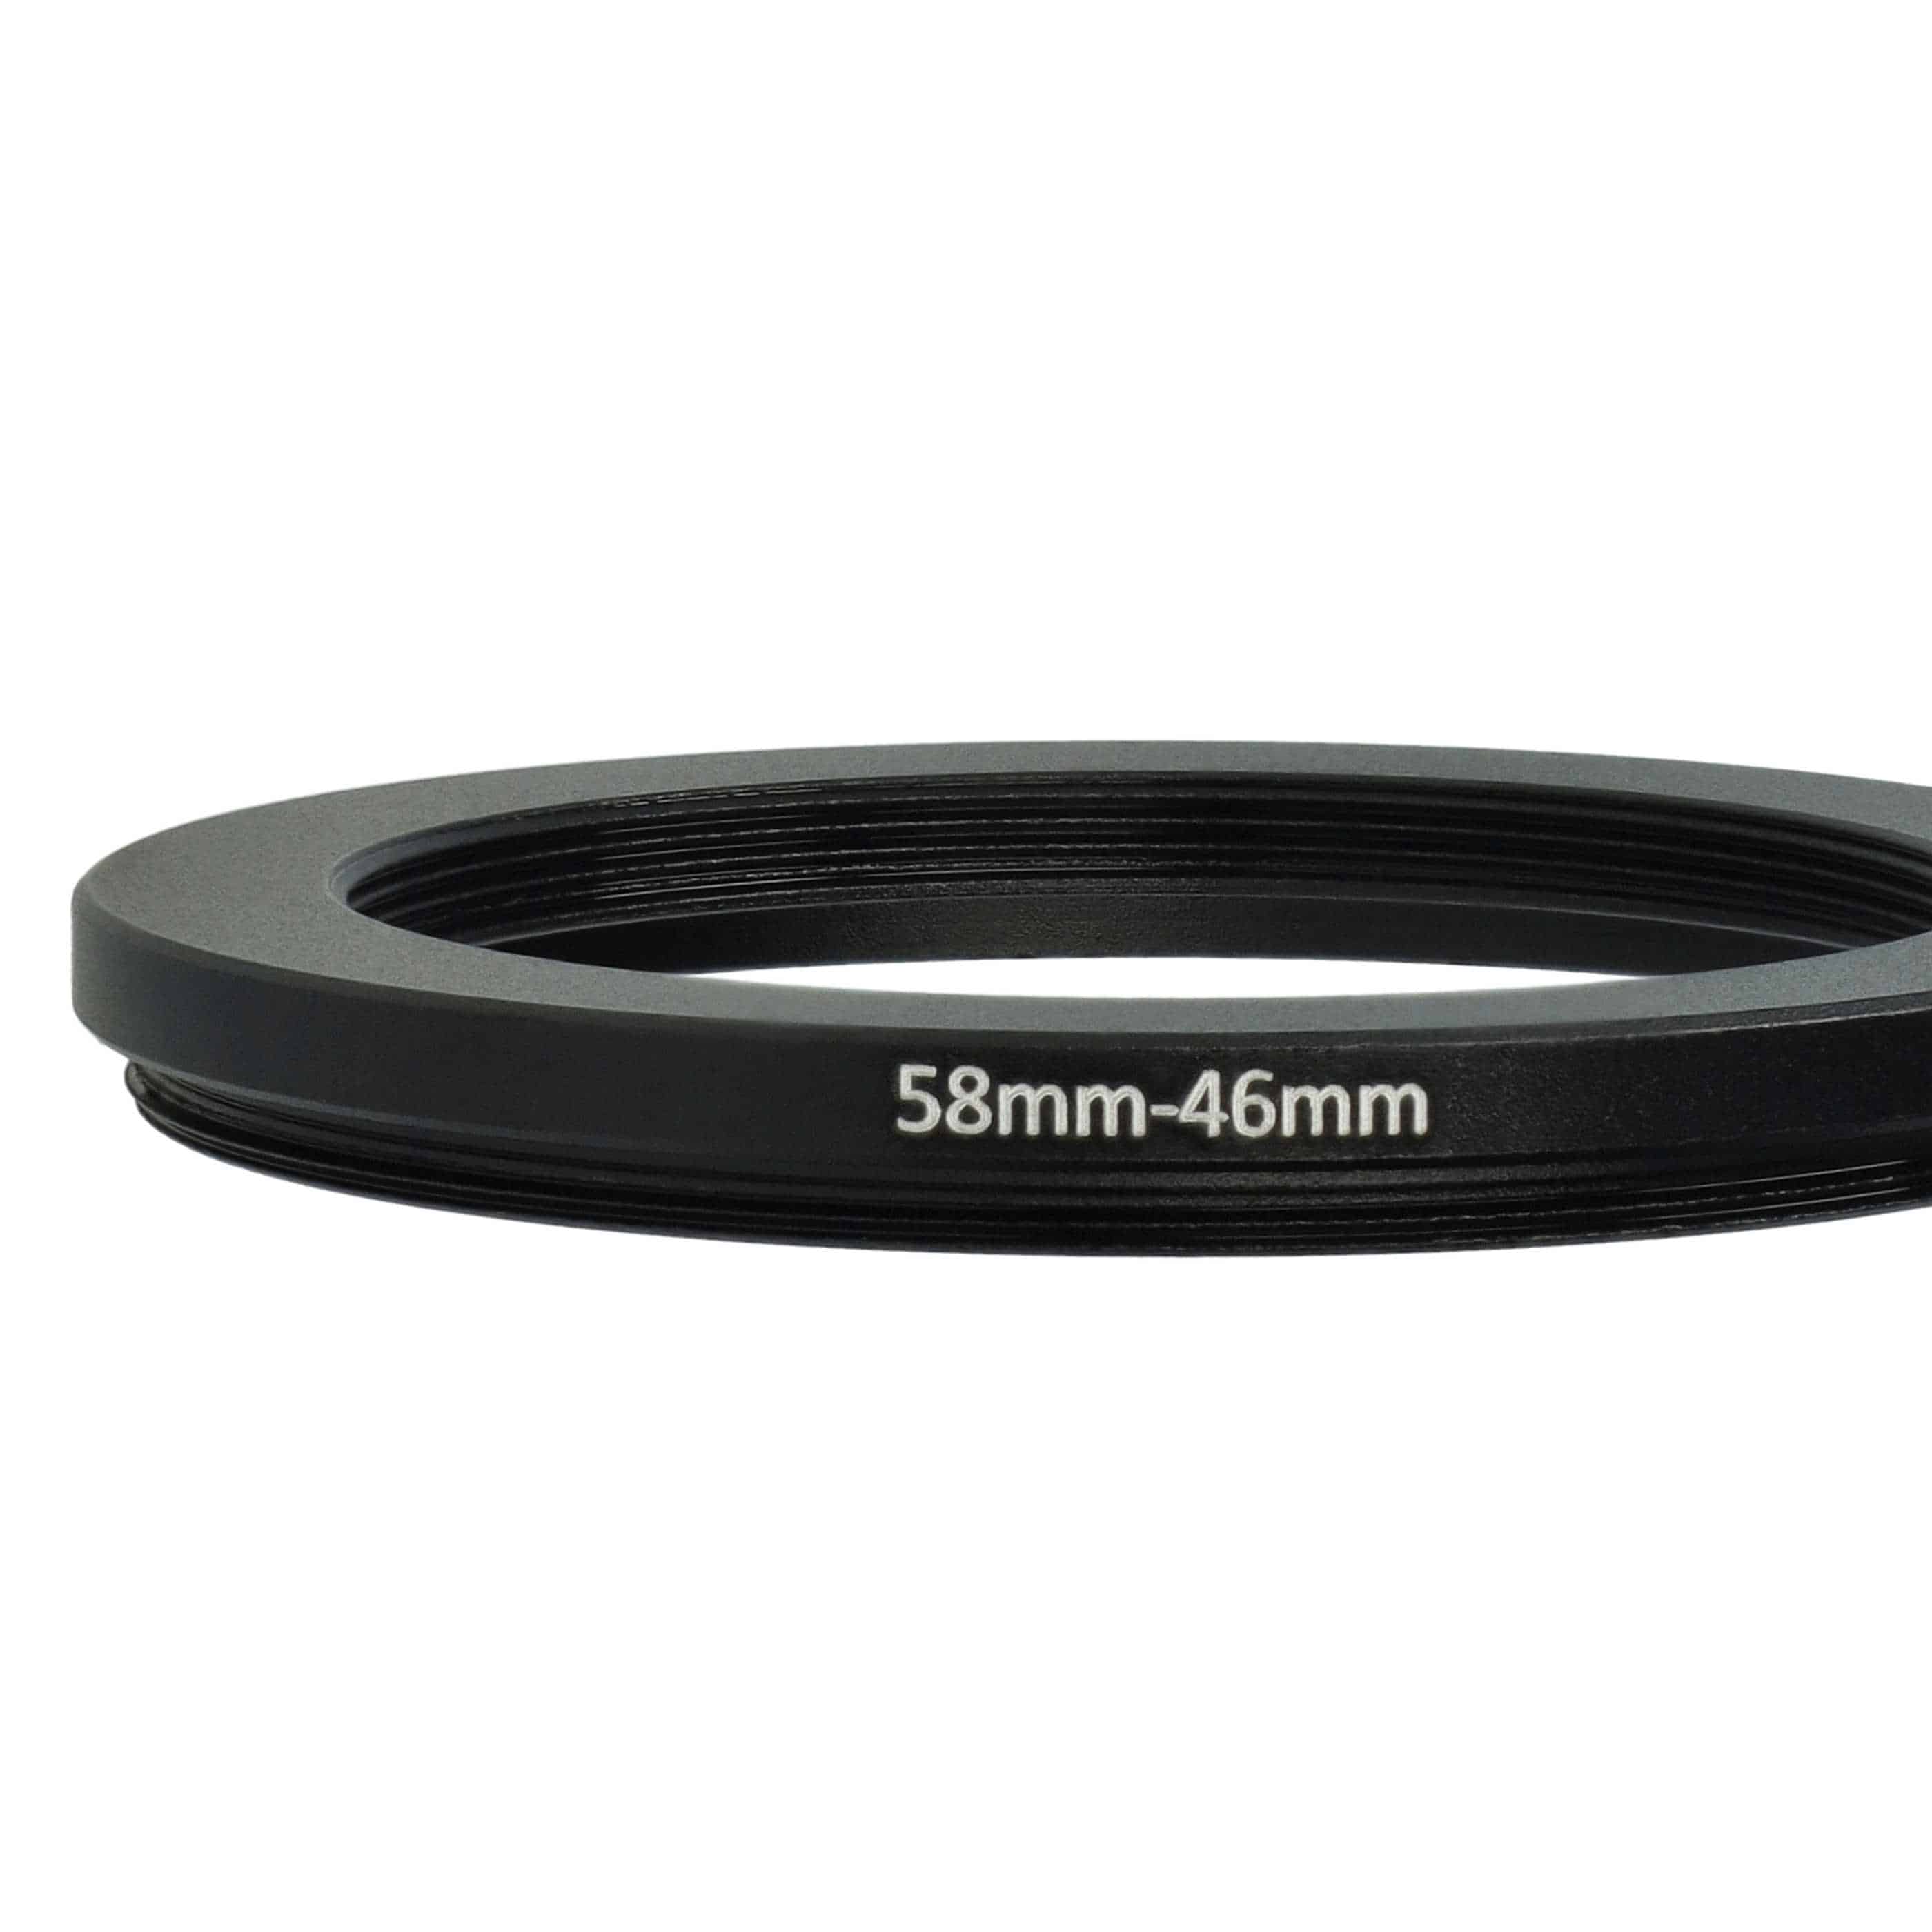 Adattatore step-down da 58 mm a 46 mm per vari obiettivi di fotocamere